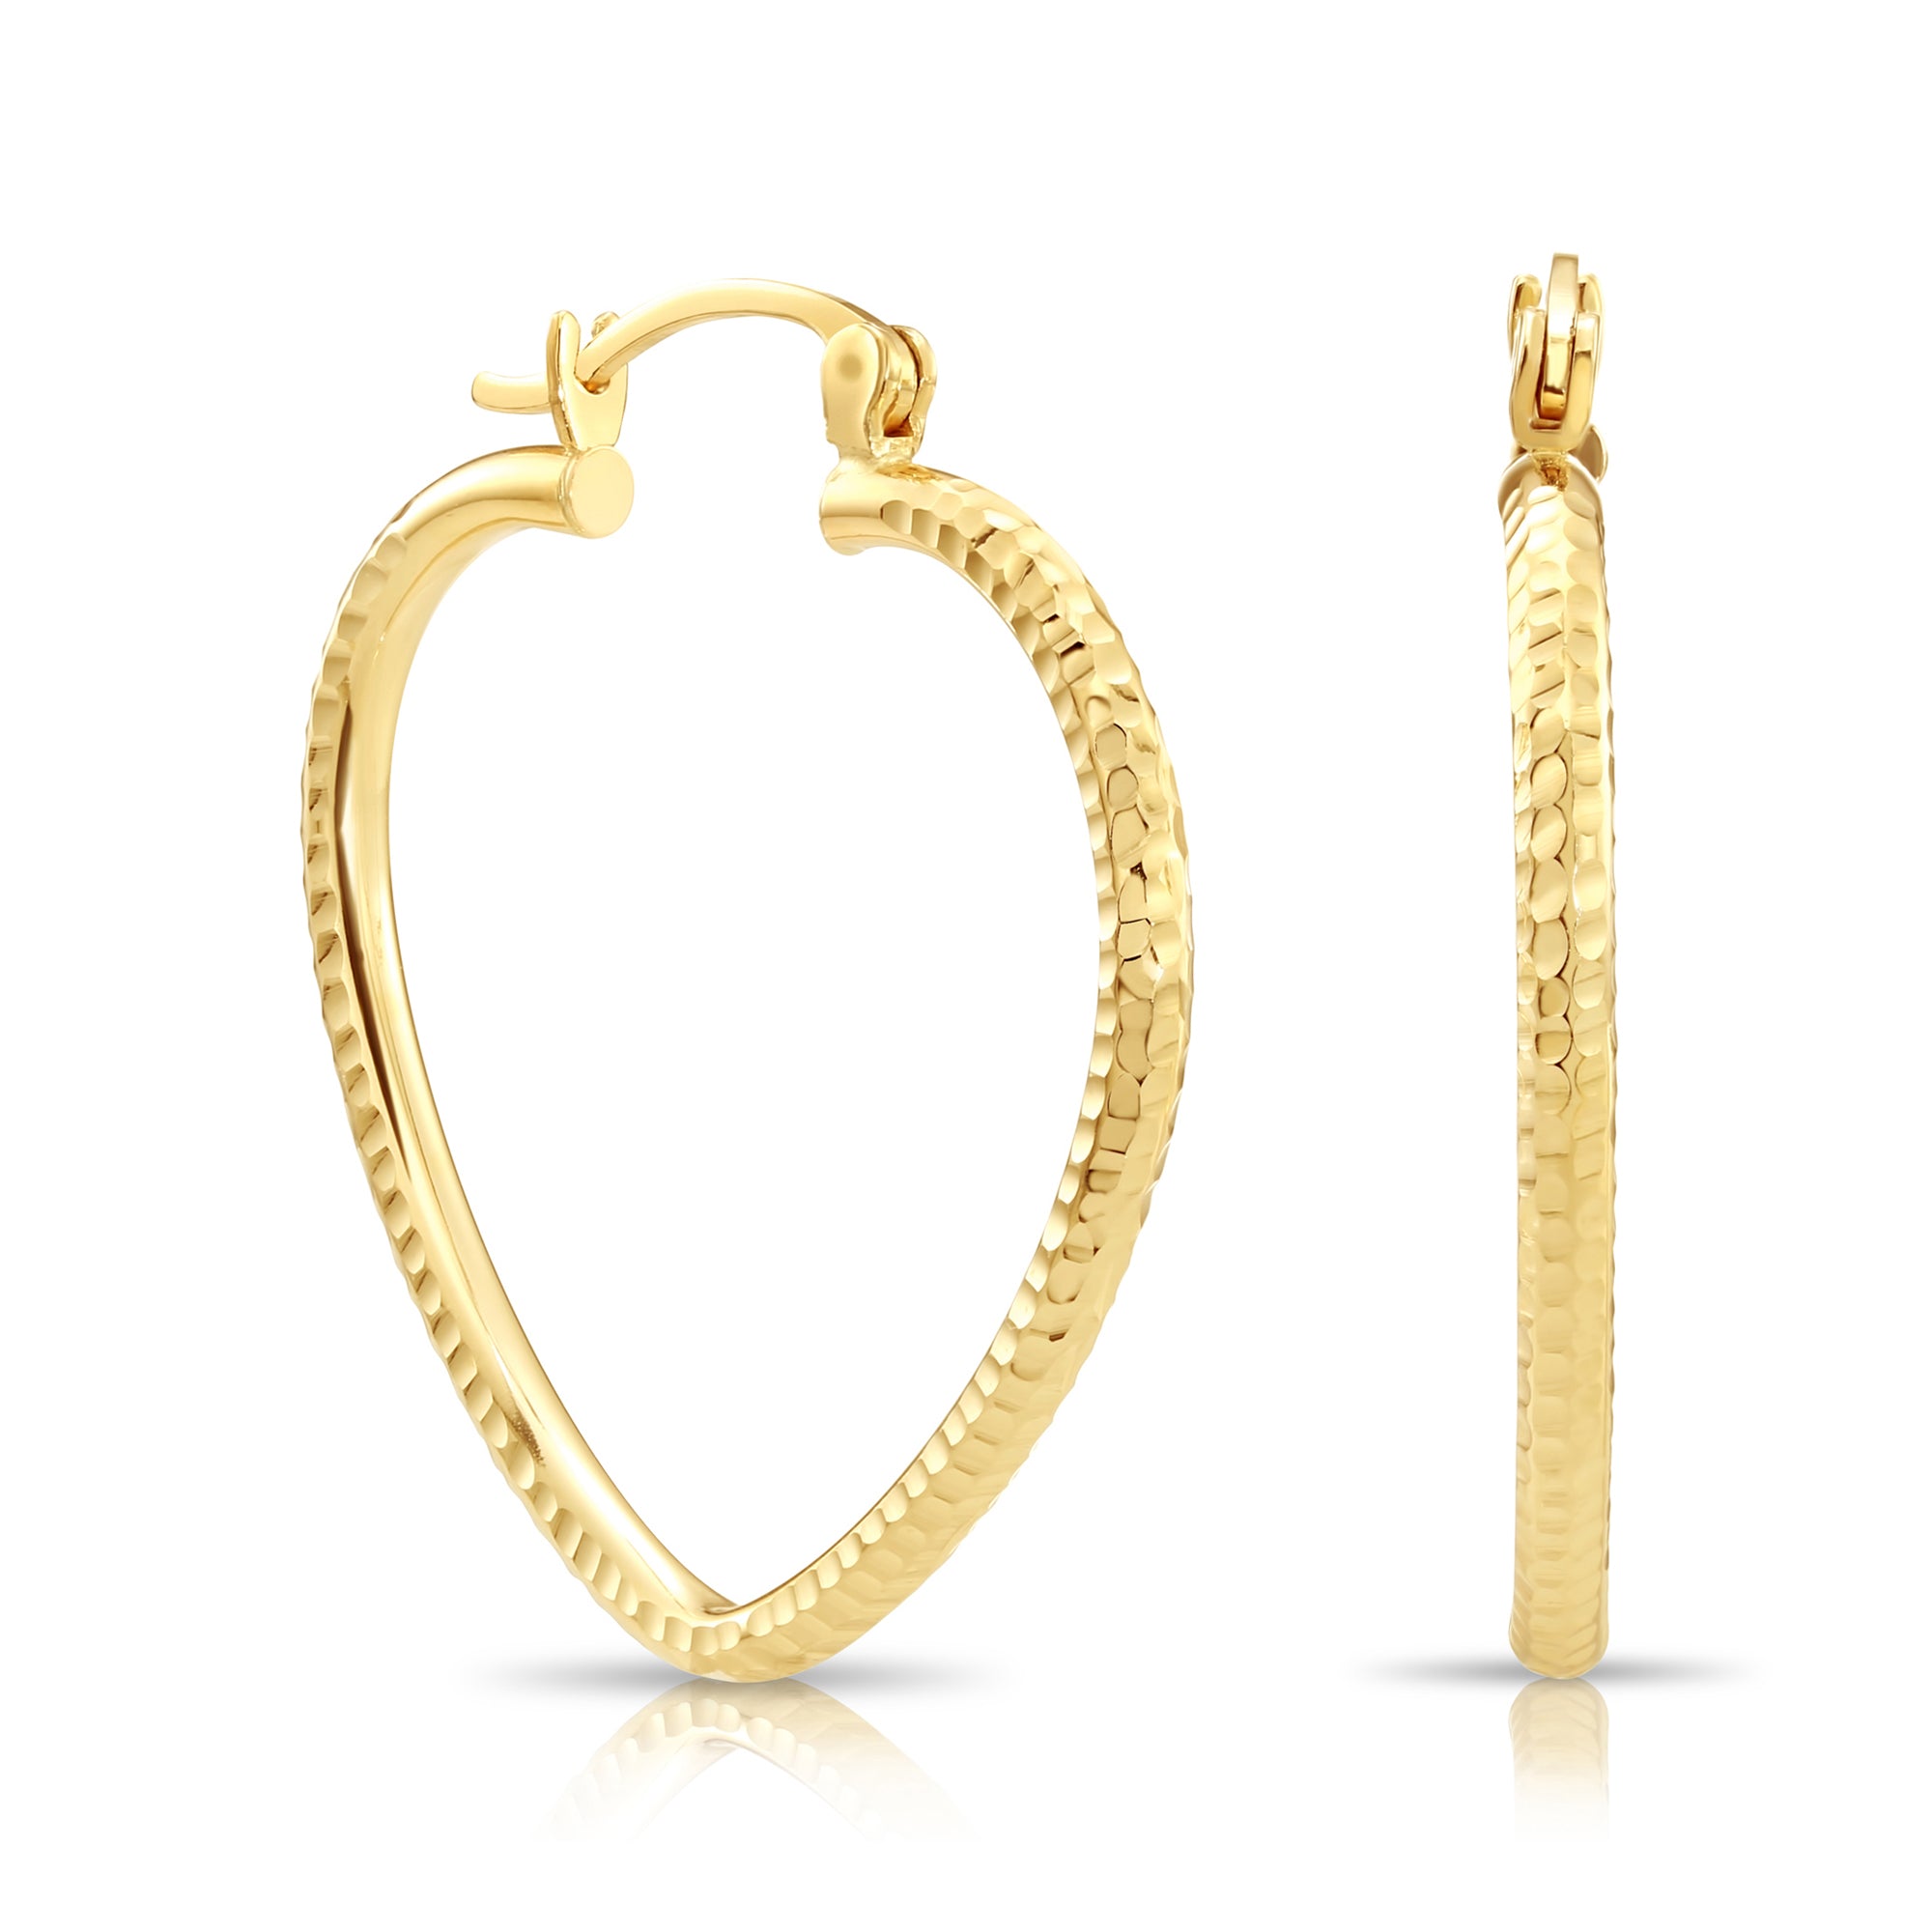 14k Yellow Gold Heart Hoop Earrings, Medium Hoops with Engravings, Diamond-Cut Design 